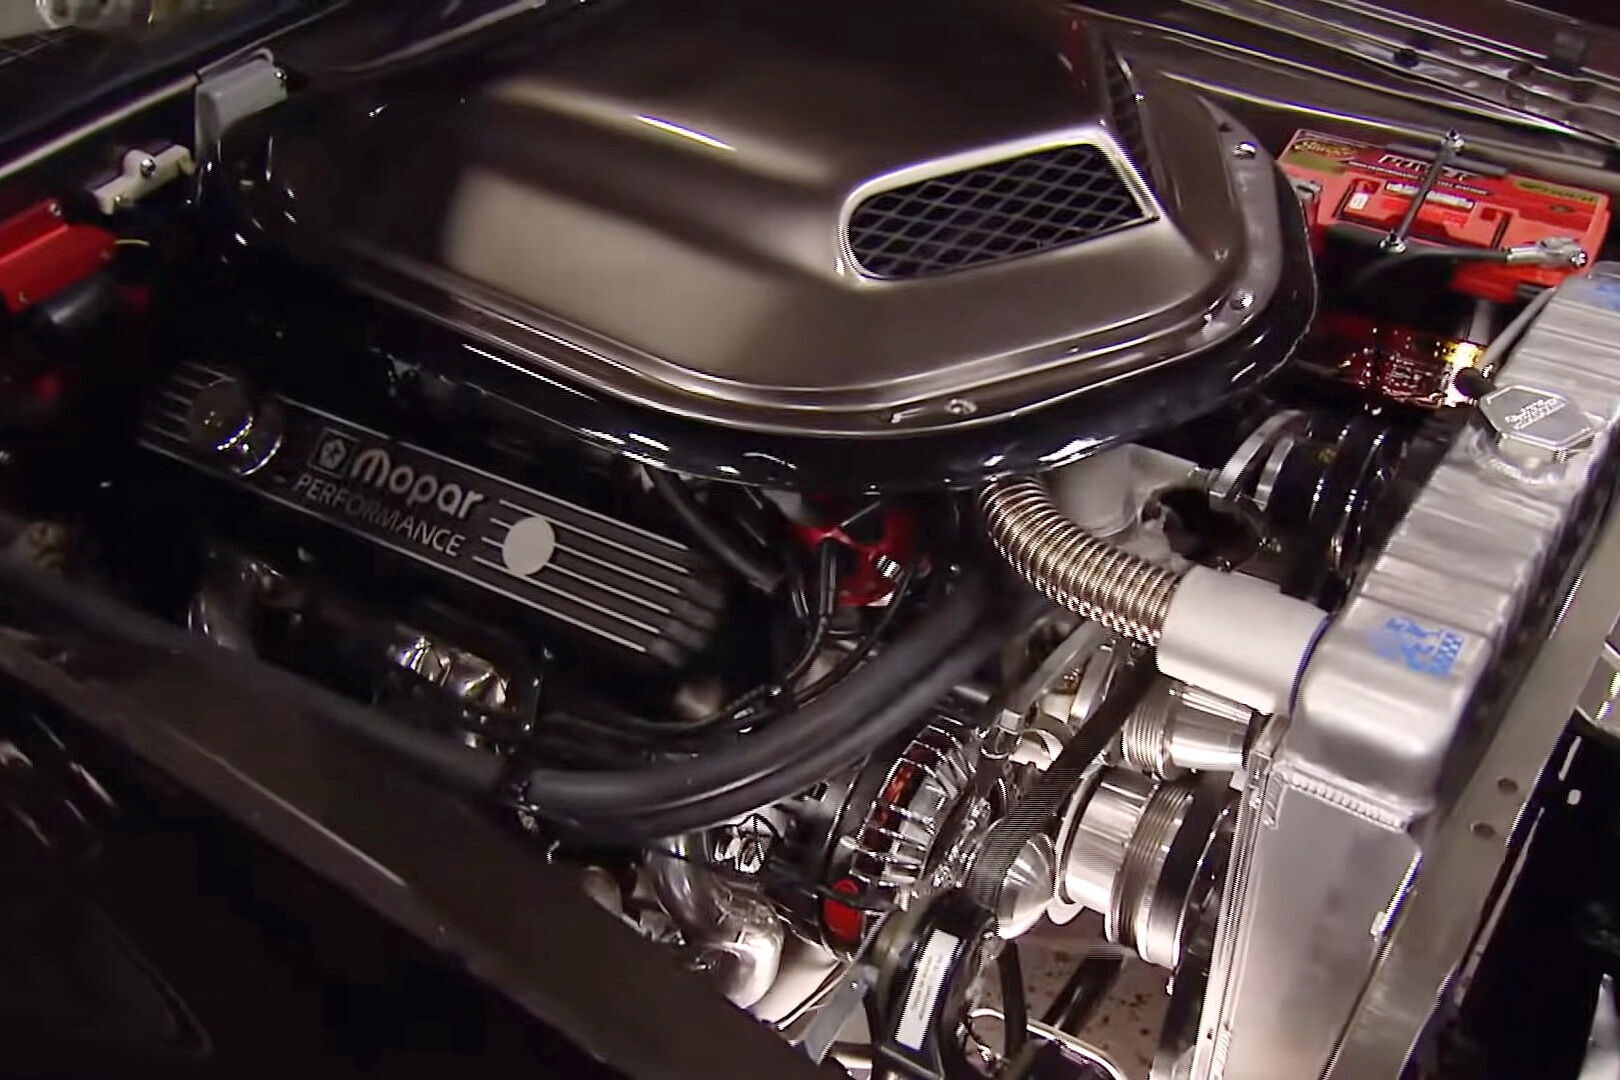 На смену штатному мотору под капотом этого автомобиля установили современный 7,2-литровый мотор Hemi V8